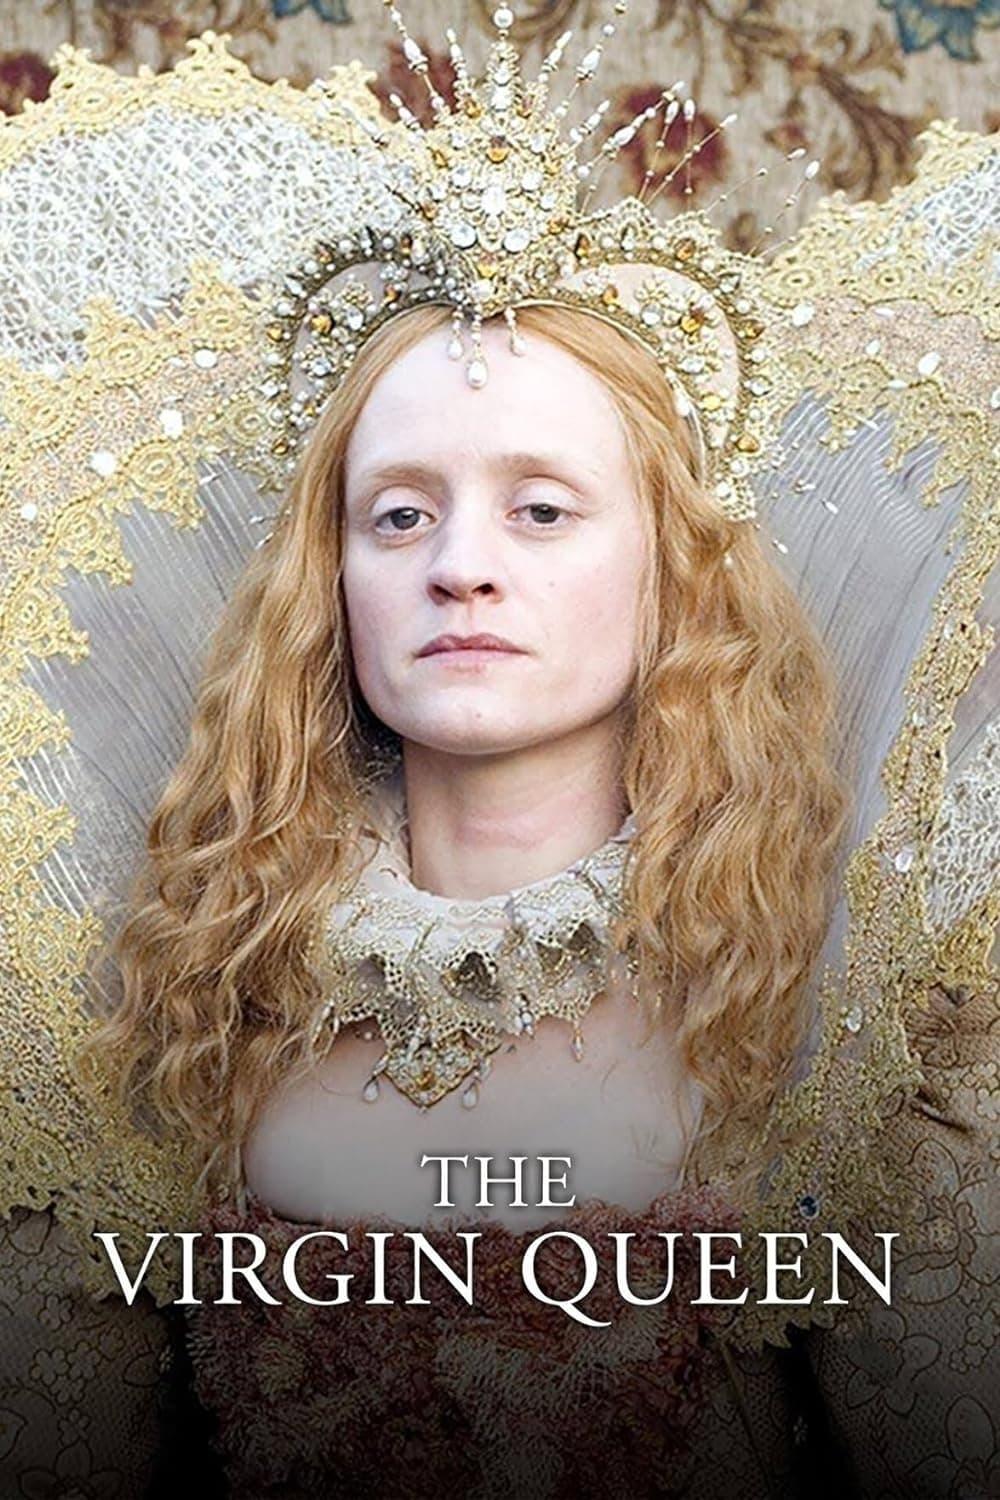 The Virgin Queen poster